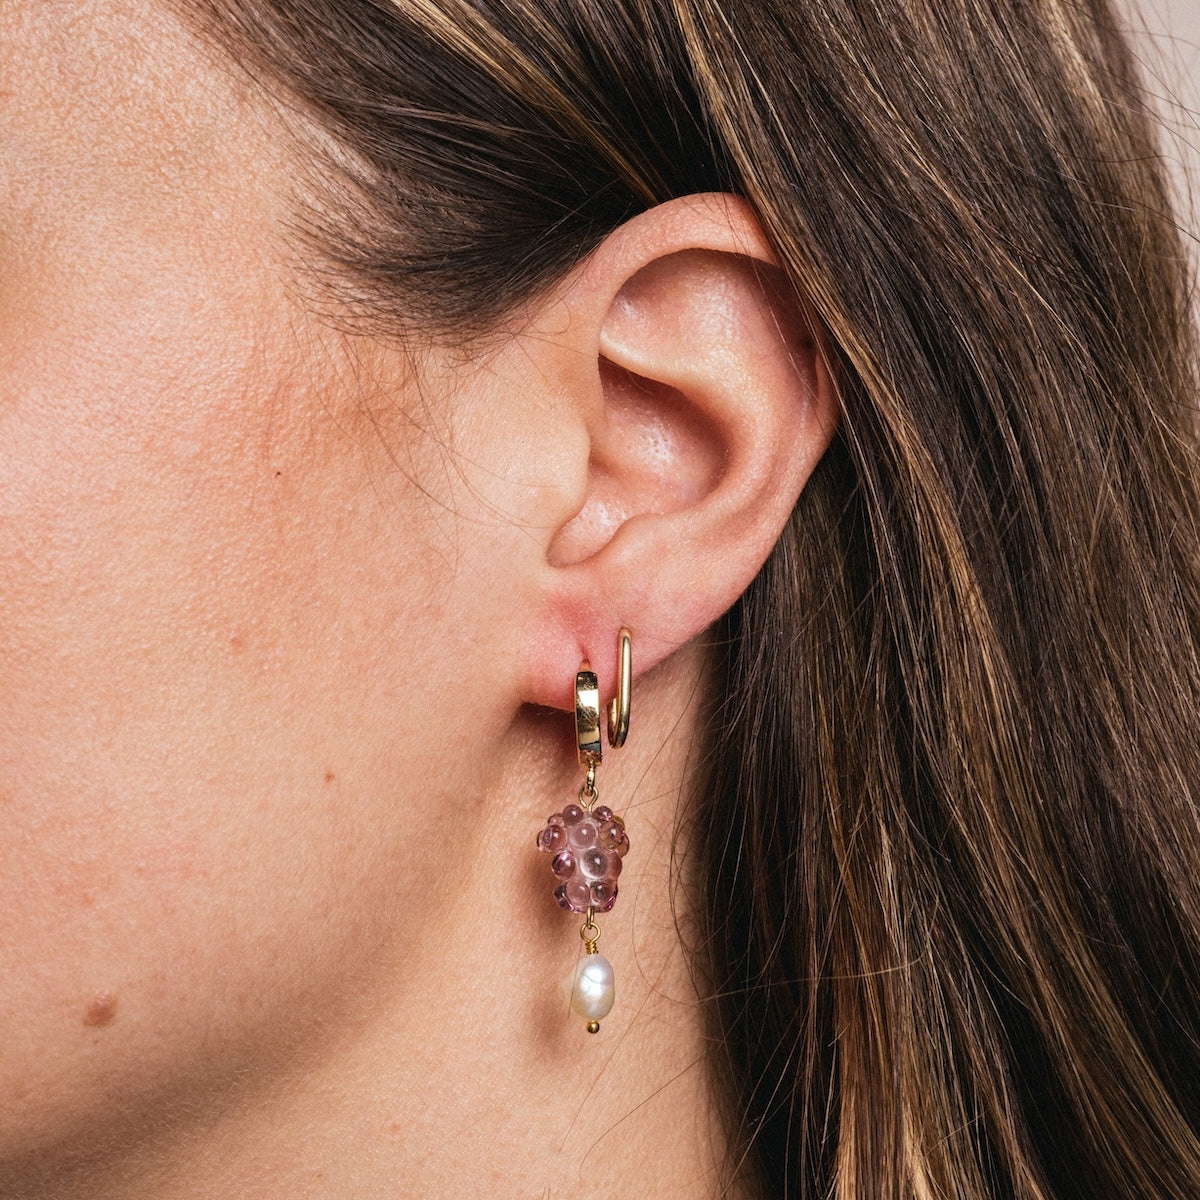 Grape BBs Earrings